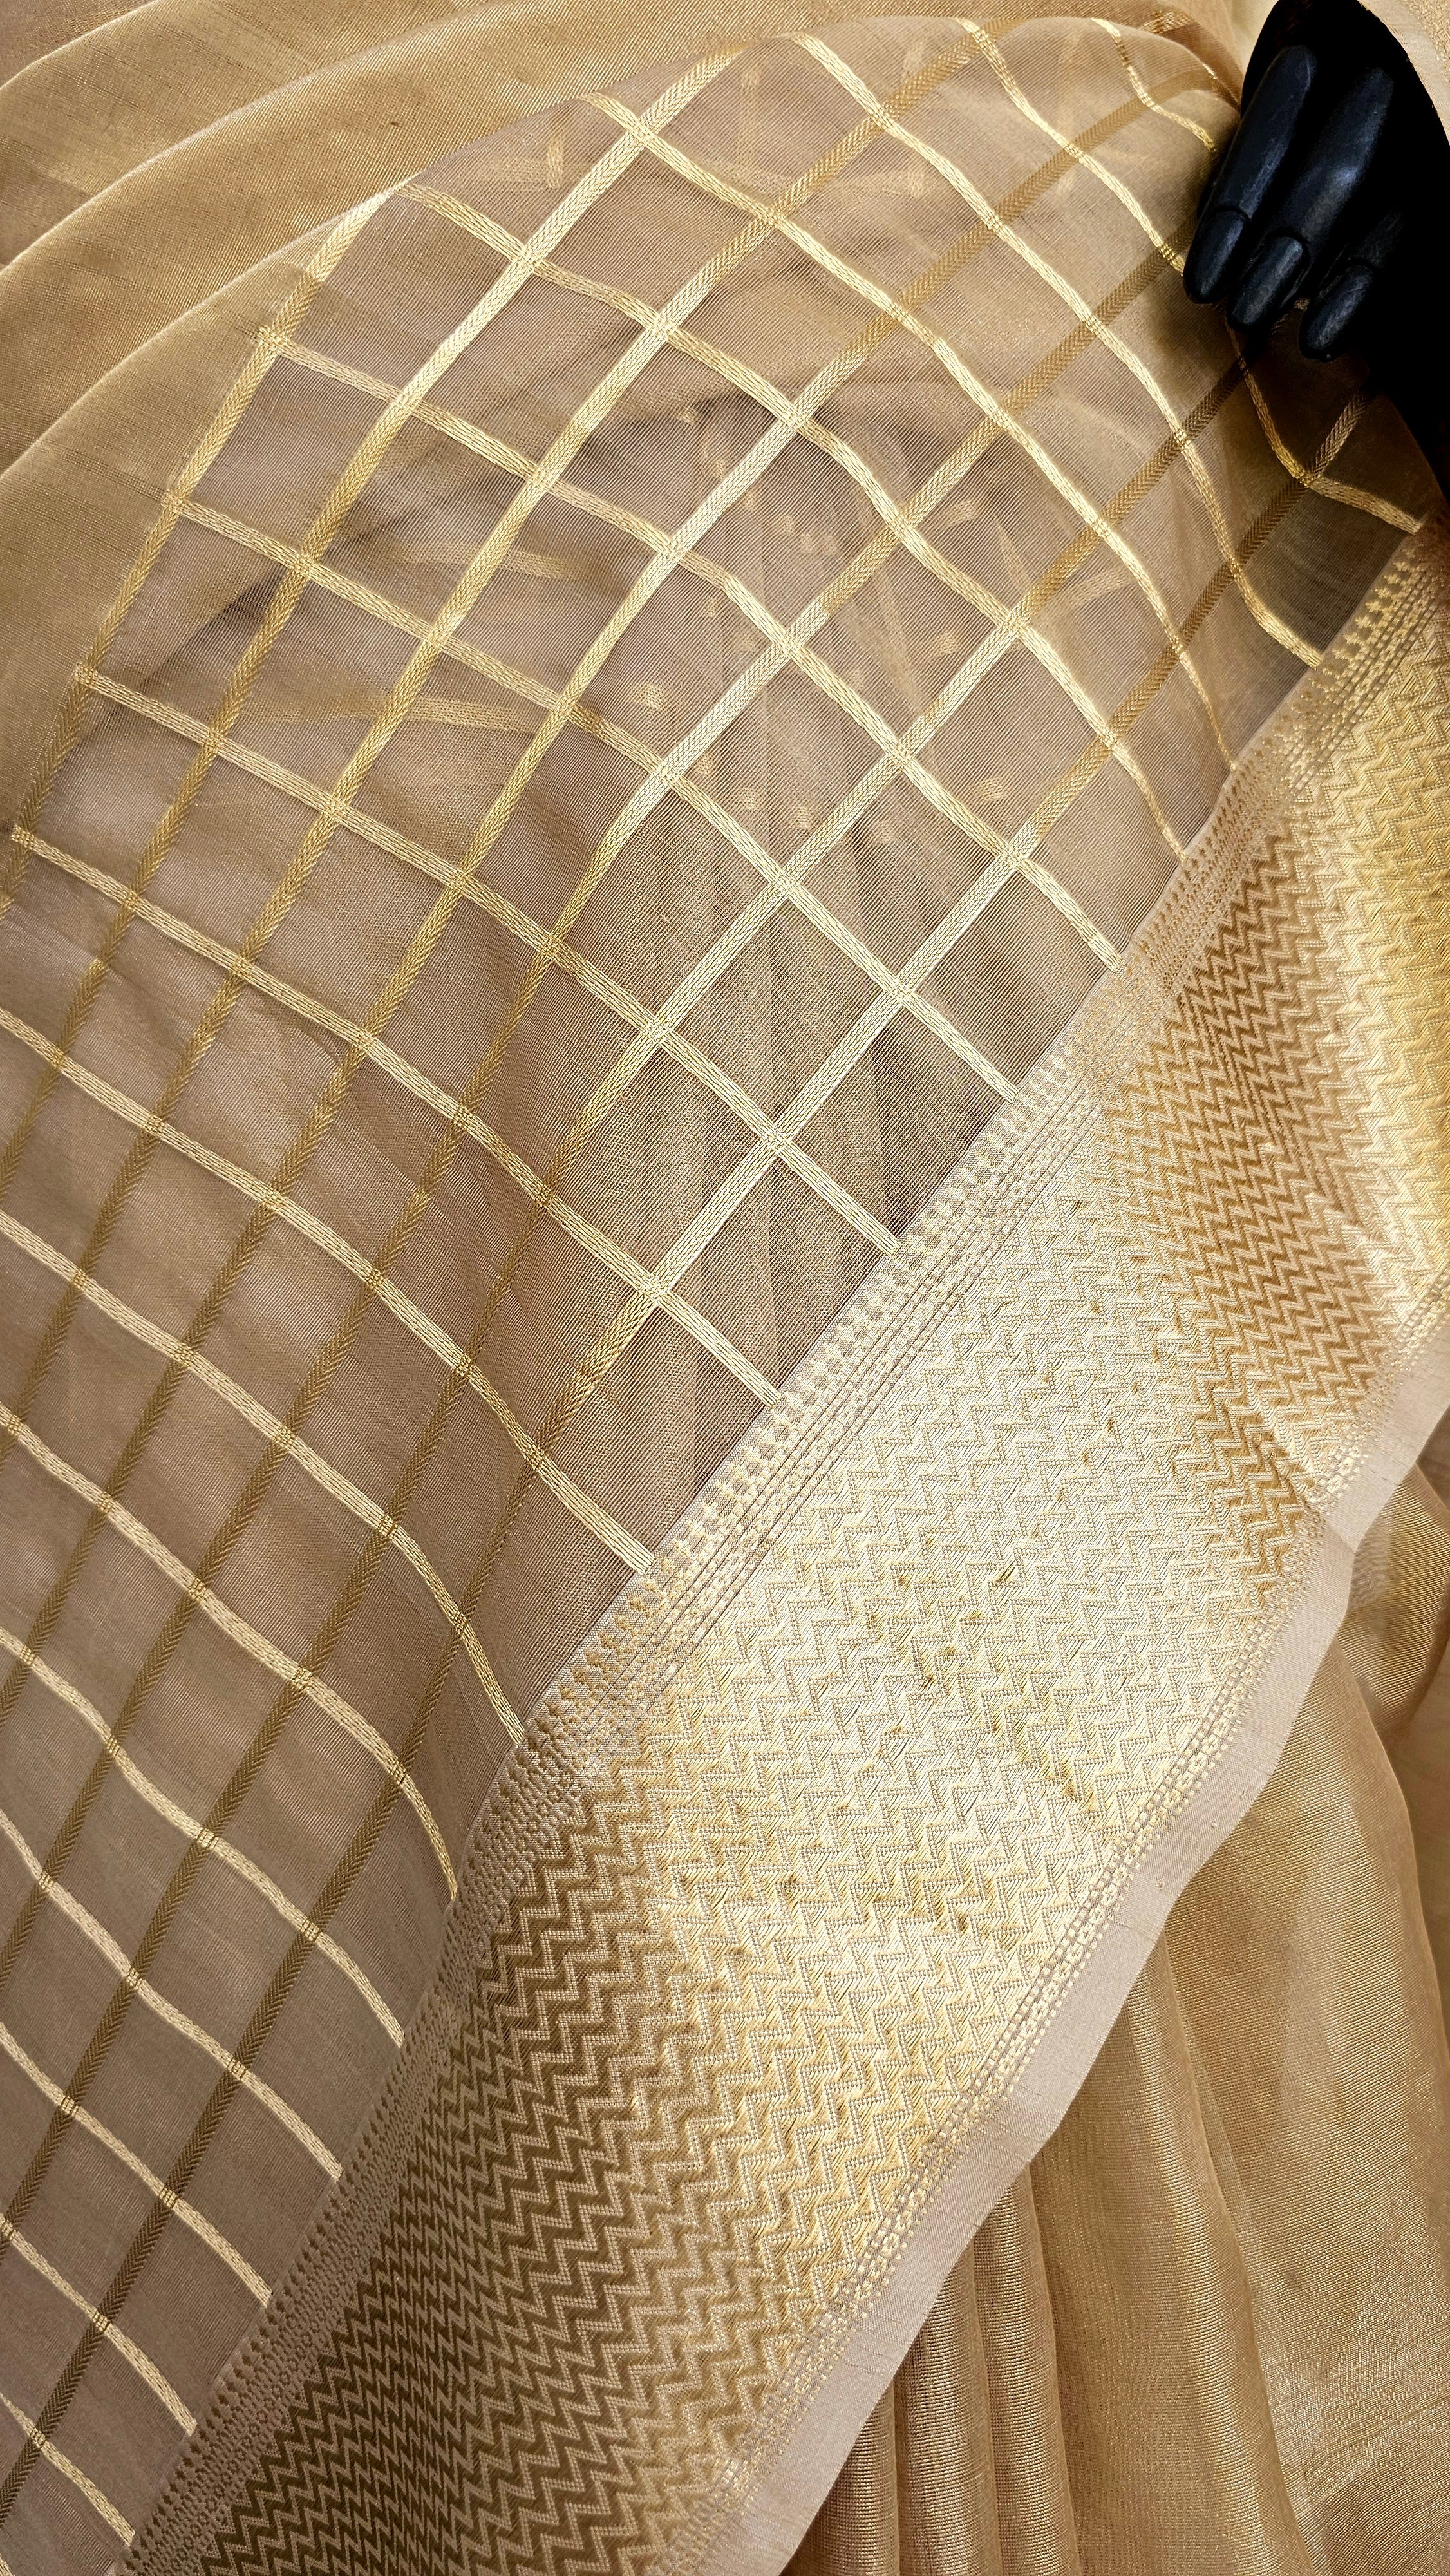 Organza Tissue Saree with Gold Zari Borders.